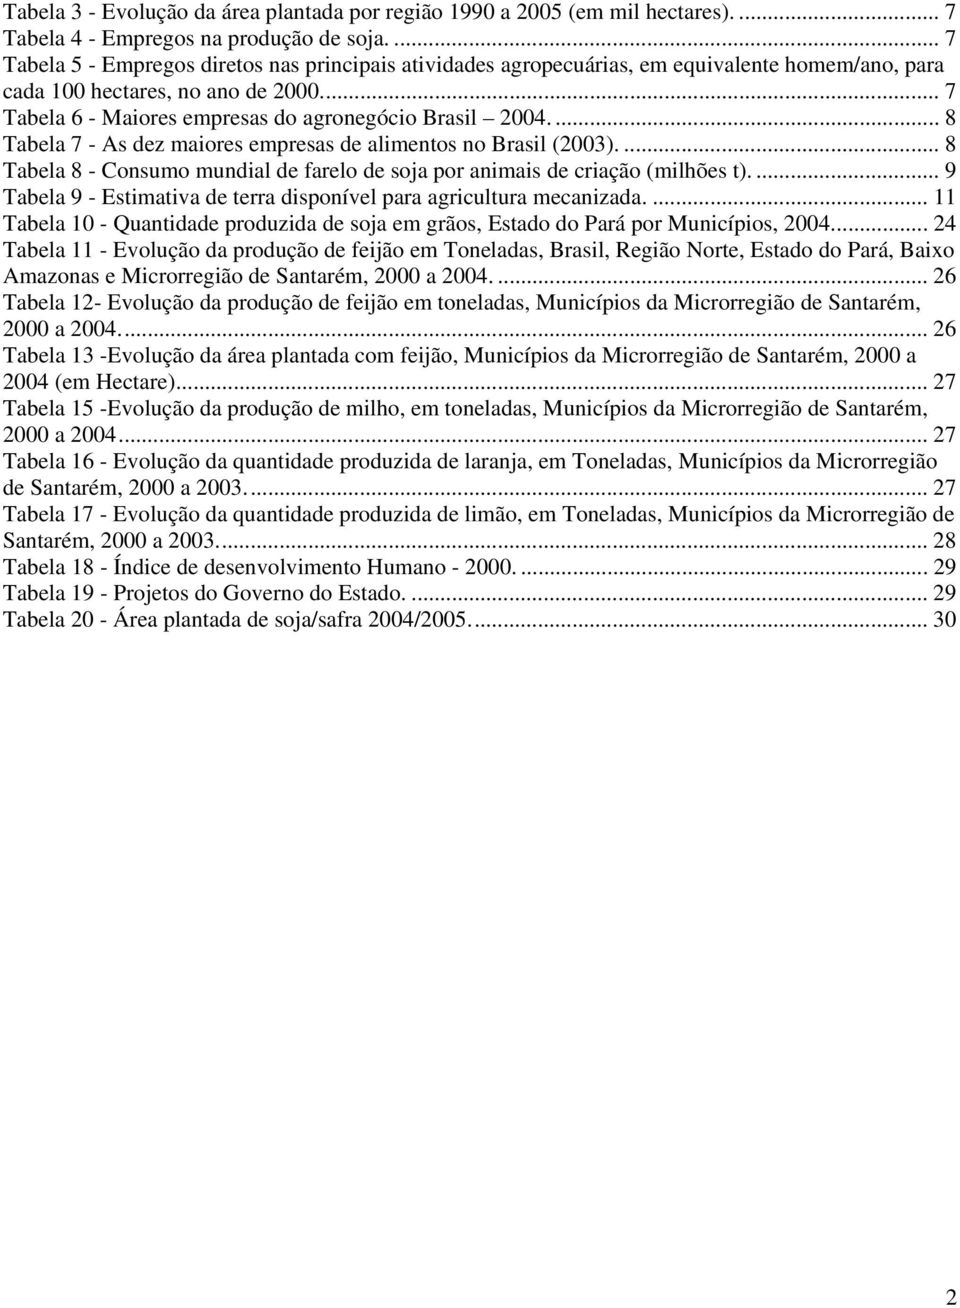 ... 8 Tabela 7 - As dez maiores empresas de alimentos no Brasil (2003).... 8 Tabela 8 - Consumo mundial de farelo de soja por animais de criação (milhões t).